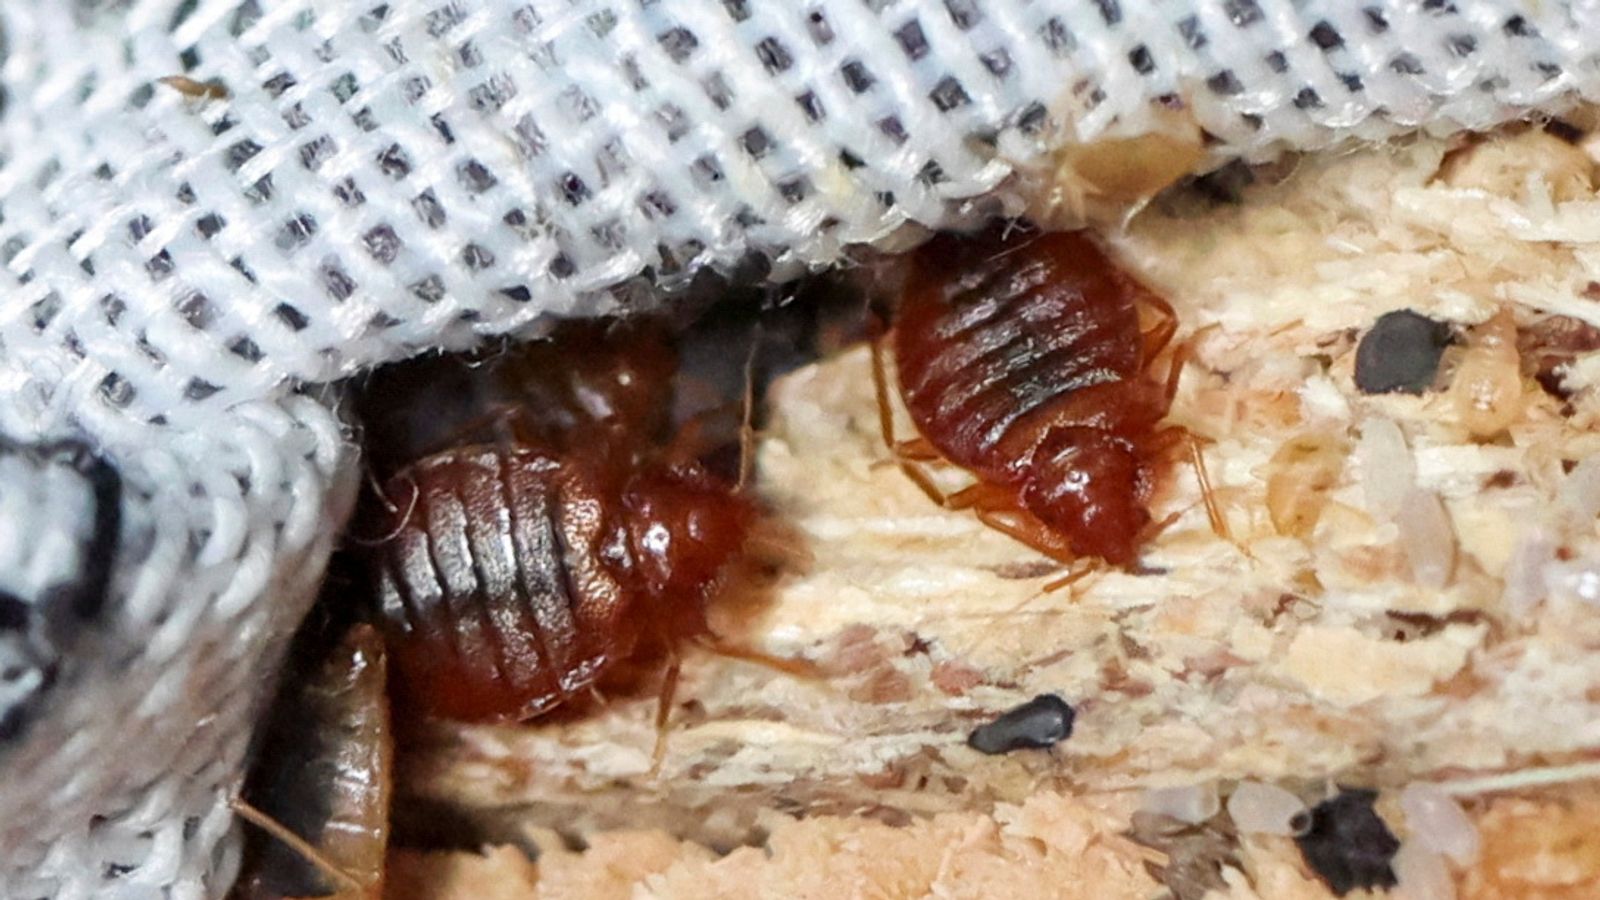 the noise tho #bedbugs, eurostar bed bugs